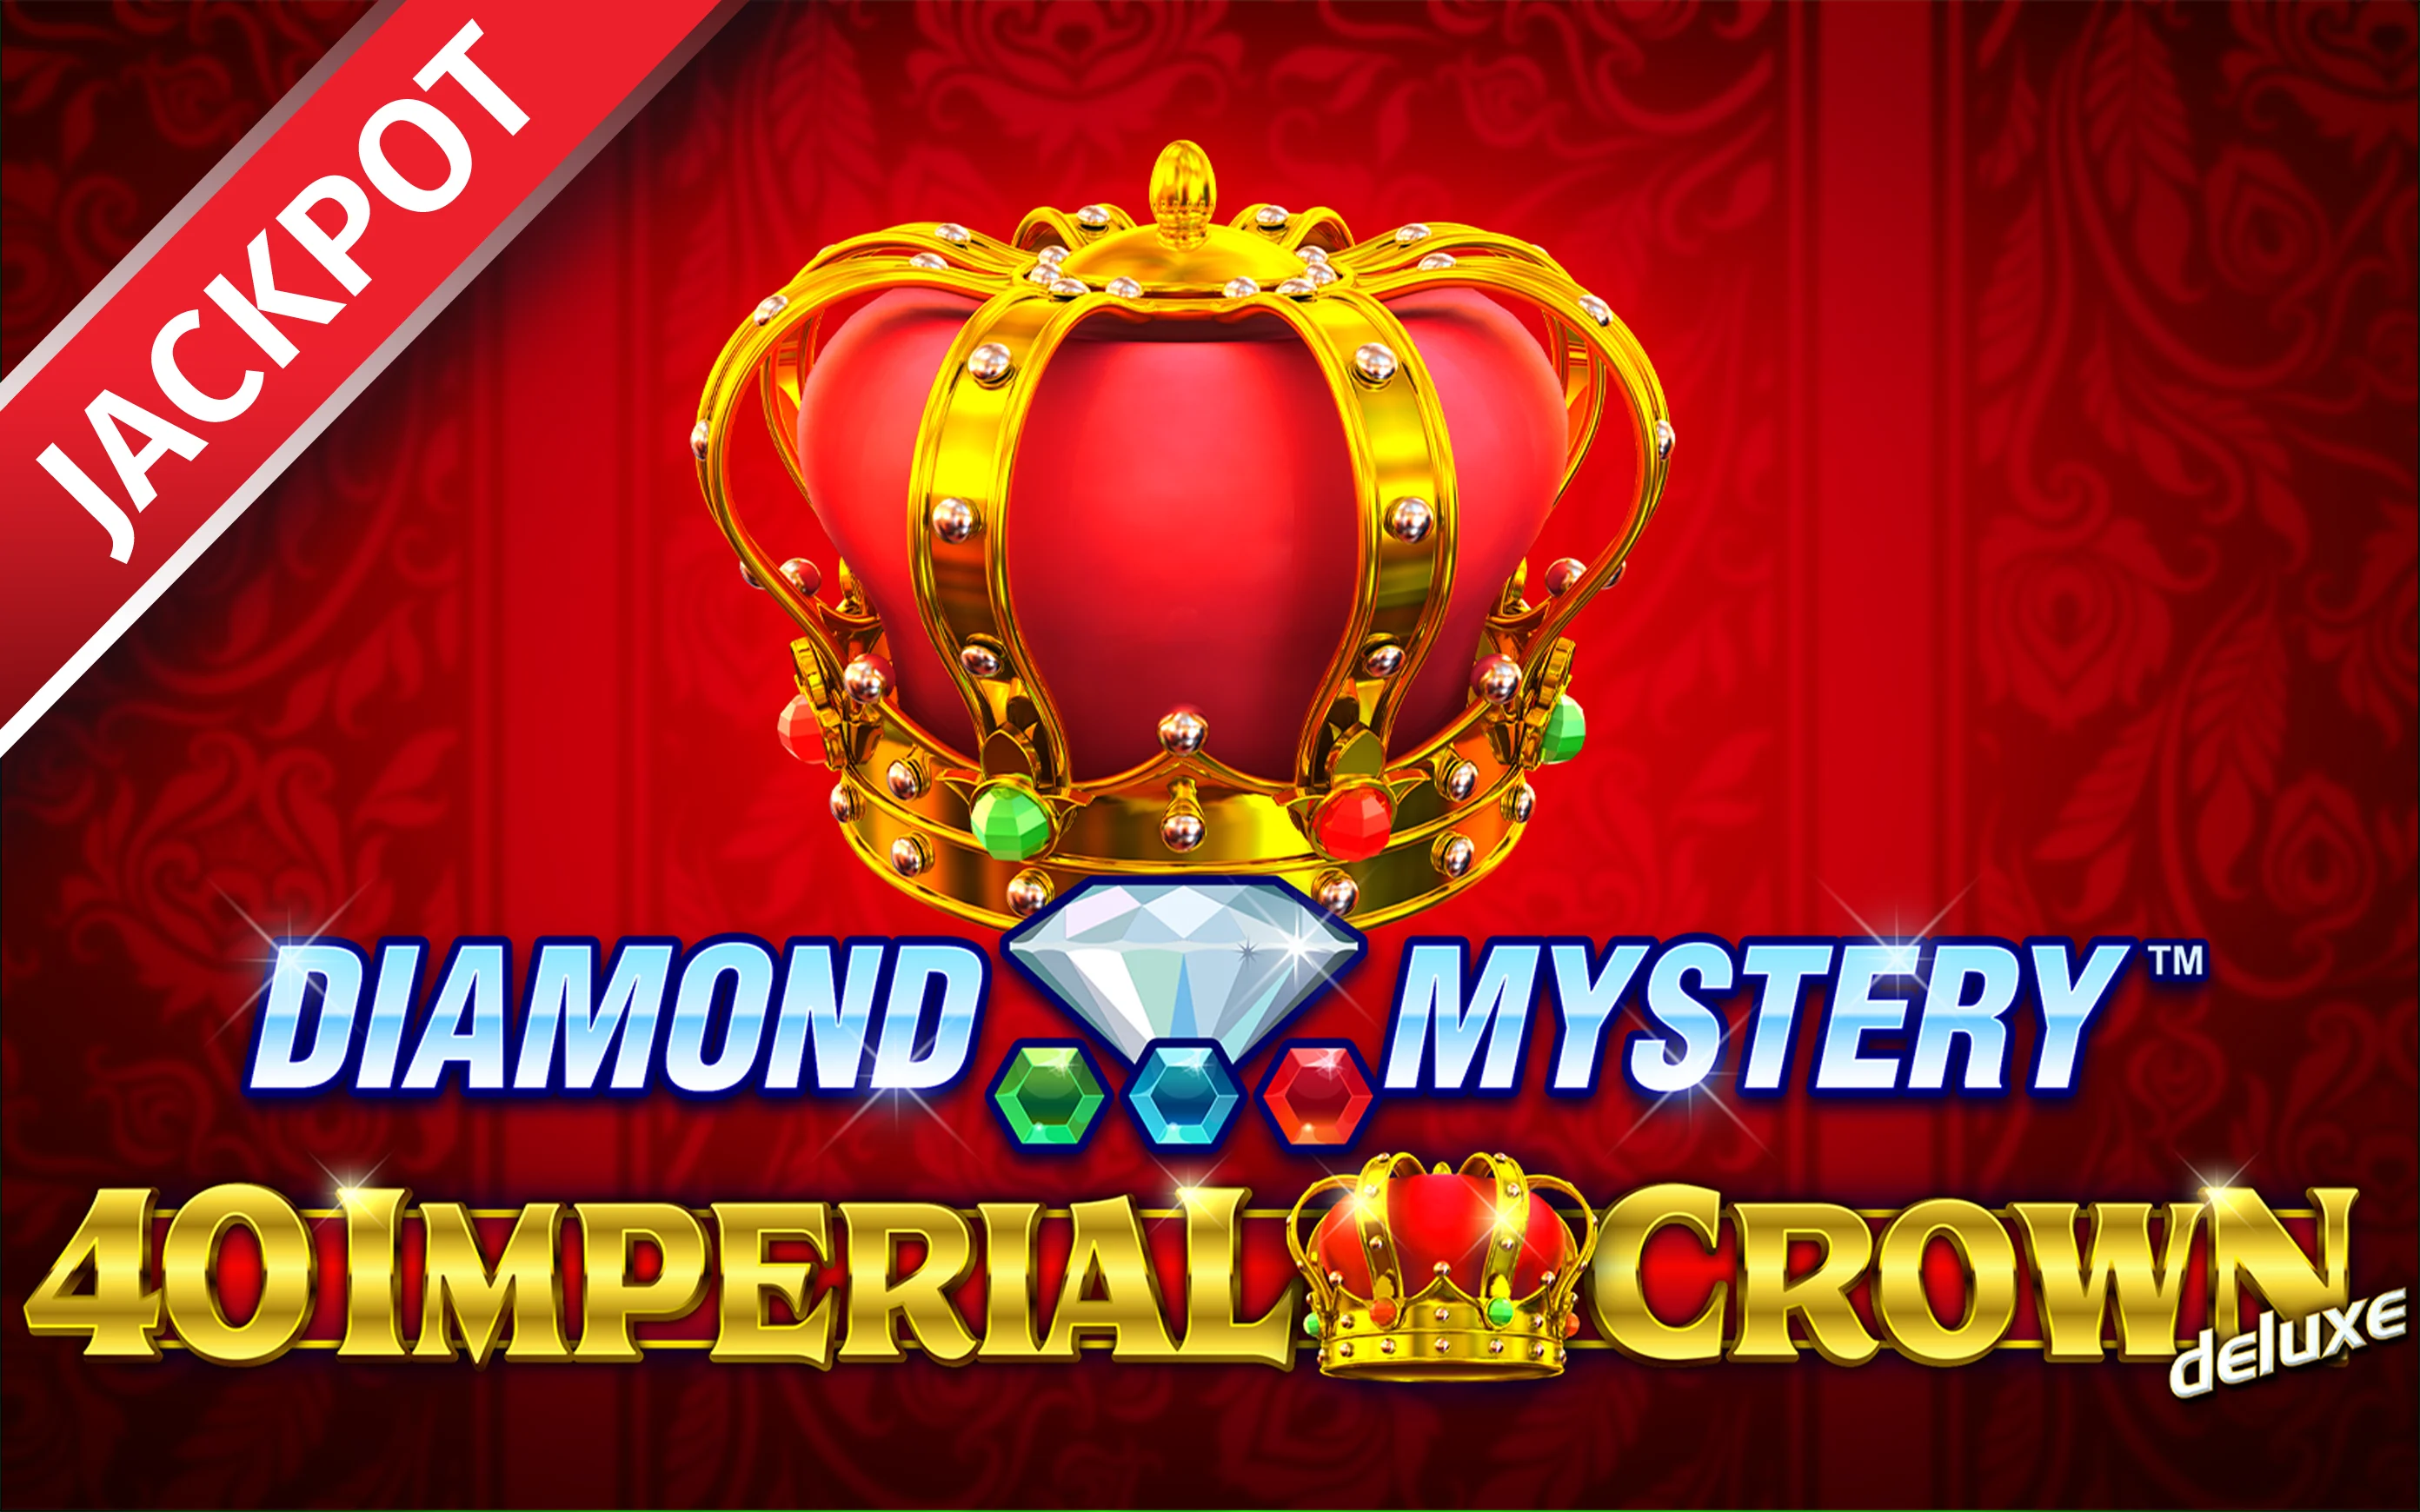 Luaj Diamond Mystery™ – 40 Imperial Crown deluxe në kazino Starcasino.be në internet